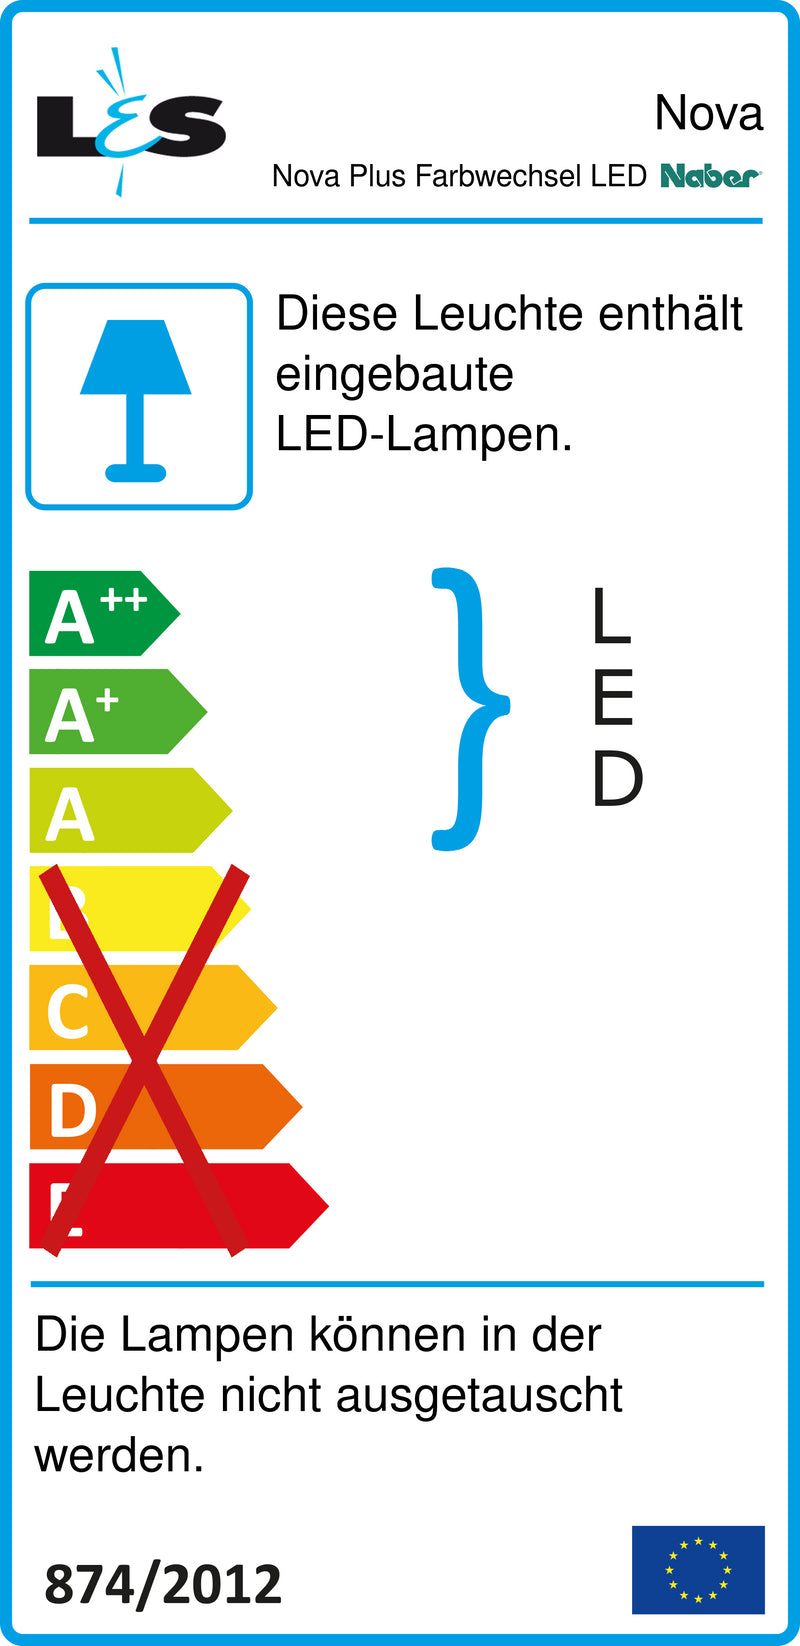 E-Label zu Zeichnung zu Nova Plus Farbwechsel LED als Variante Einzelleuchte ohne Schalter, LIC LED-System kompatibel, edelstahlfarbig von Naber GmbH in der Kategorie Lichttechnik in Österreich auf conceptshop.at